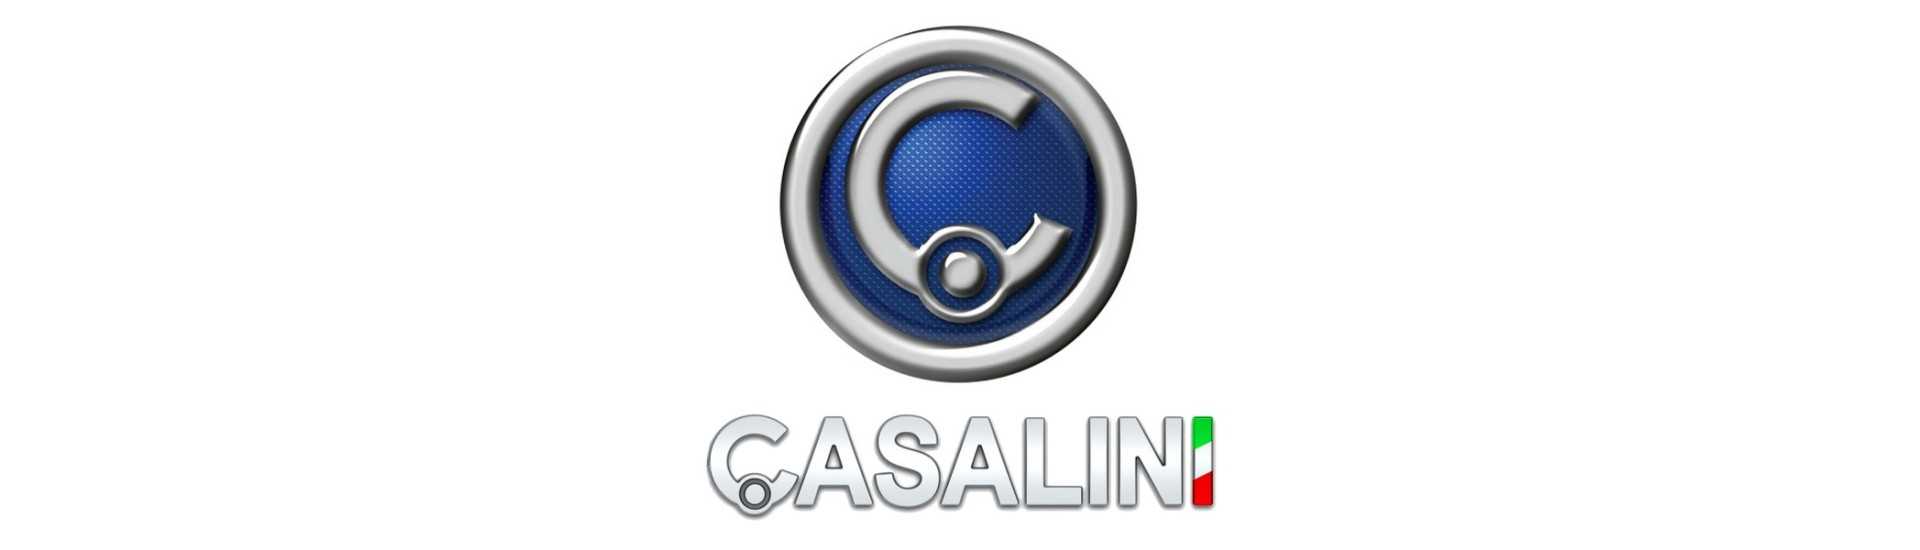 Plafonnier au meilleur prix pour voiture sans permis Casalini